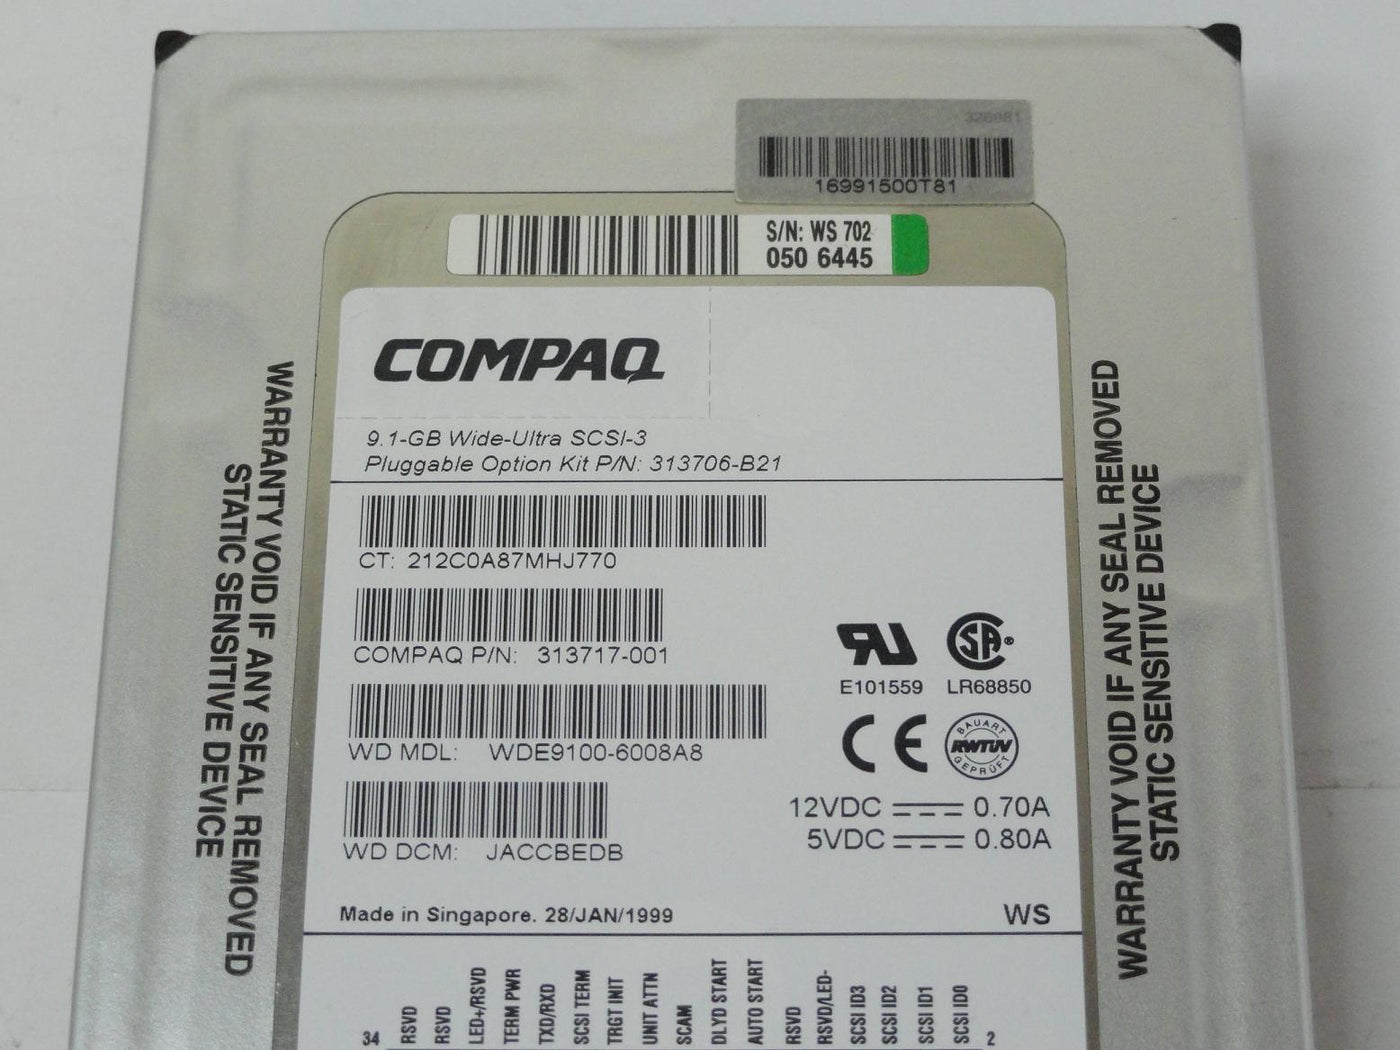 MC0949_WDE9100-6008A8_Compaq/WDigital 9GB SCA 80 HDD - Image3